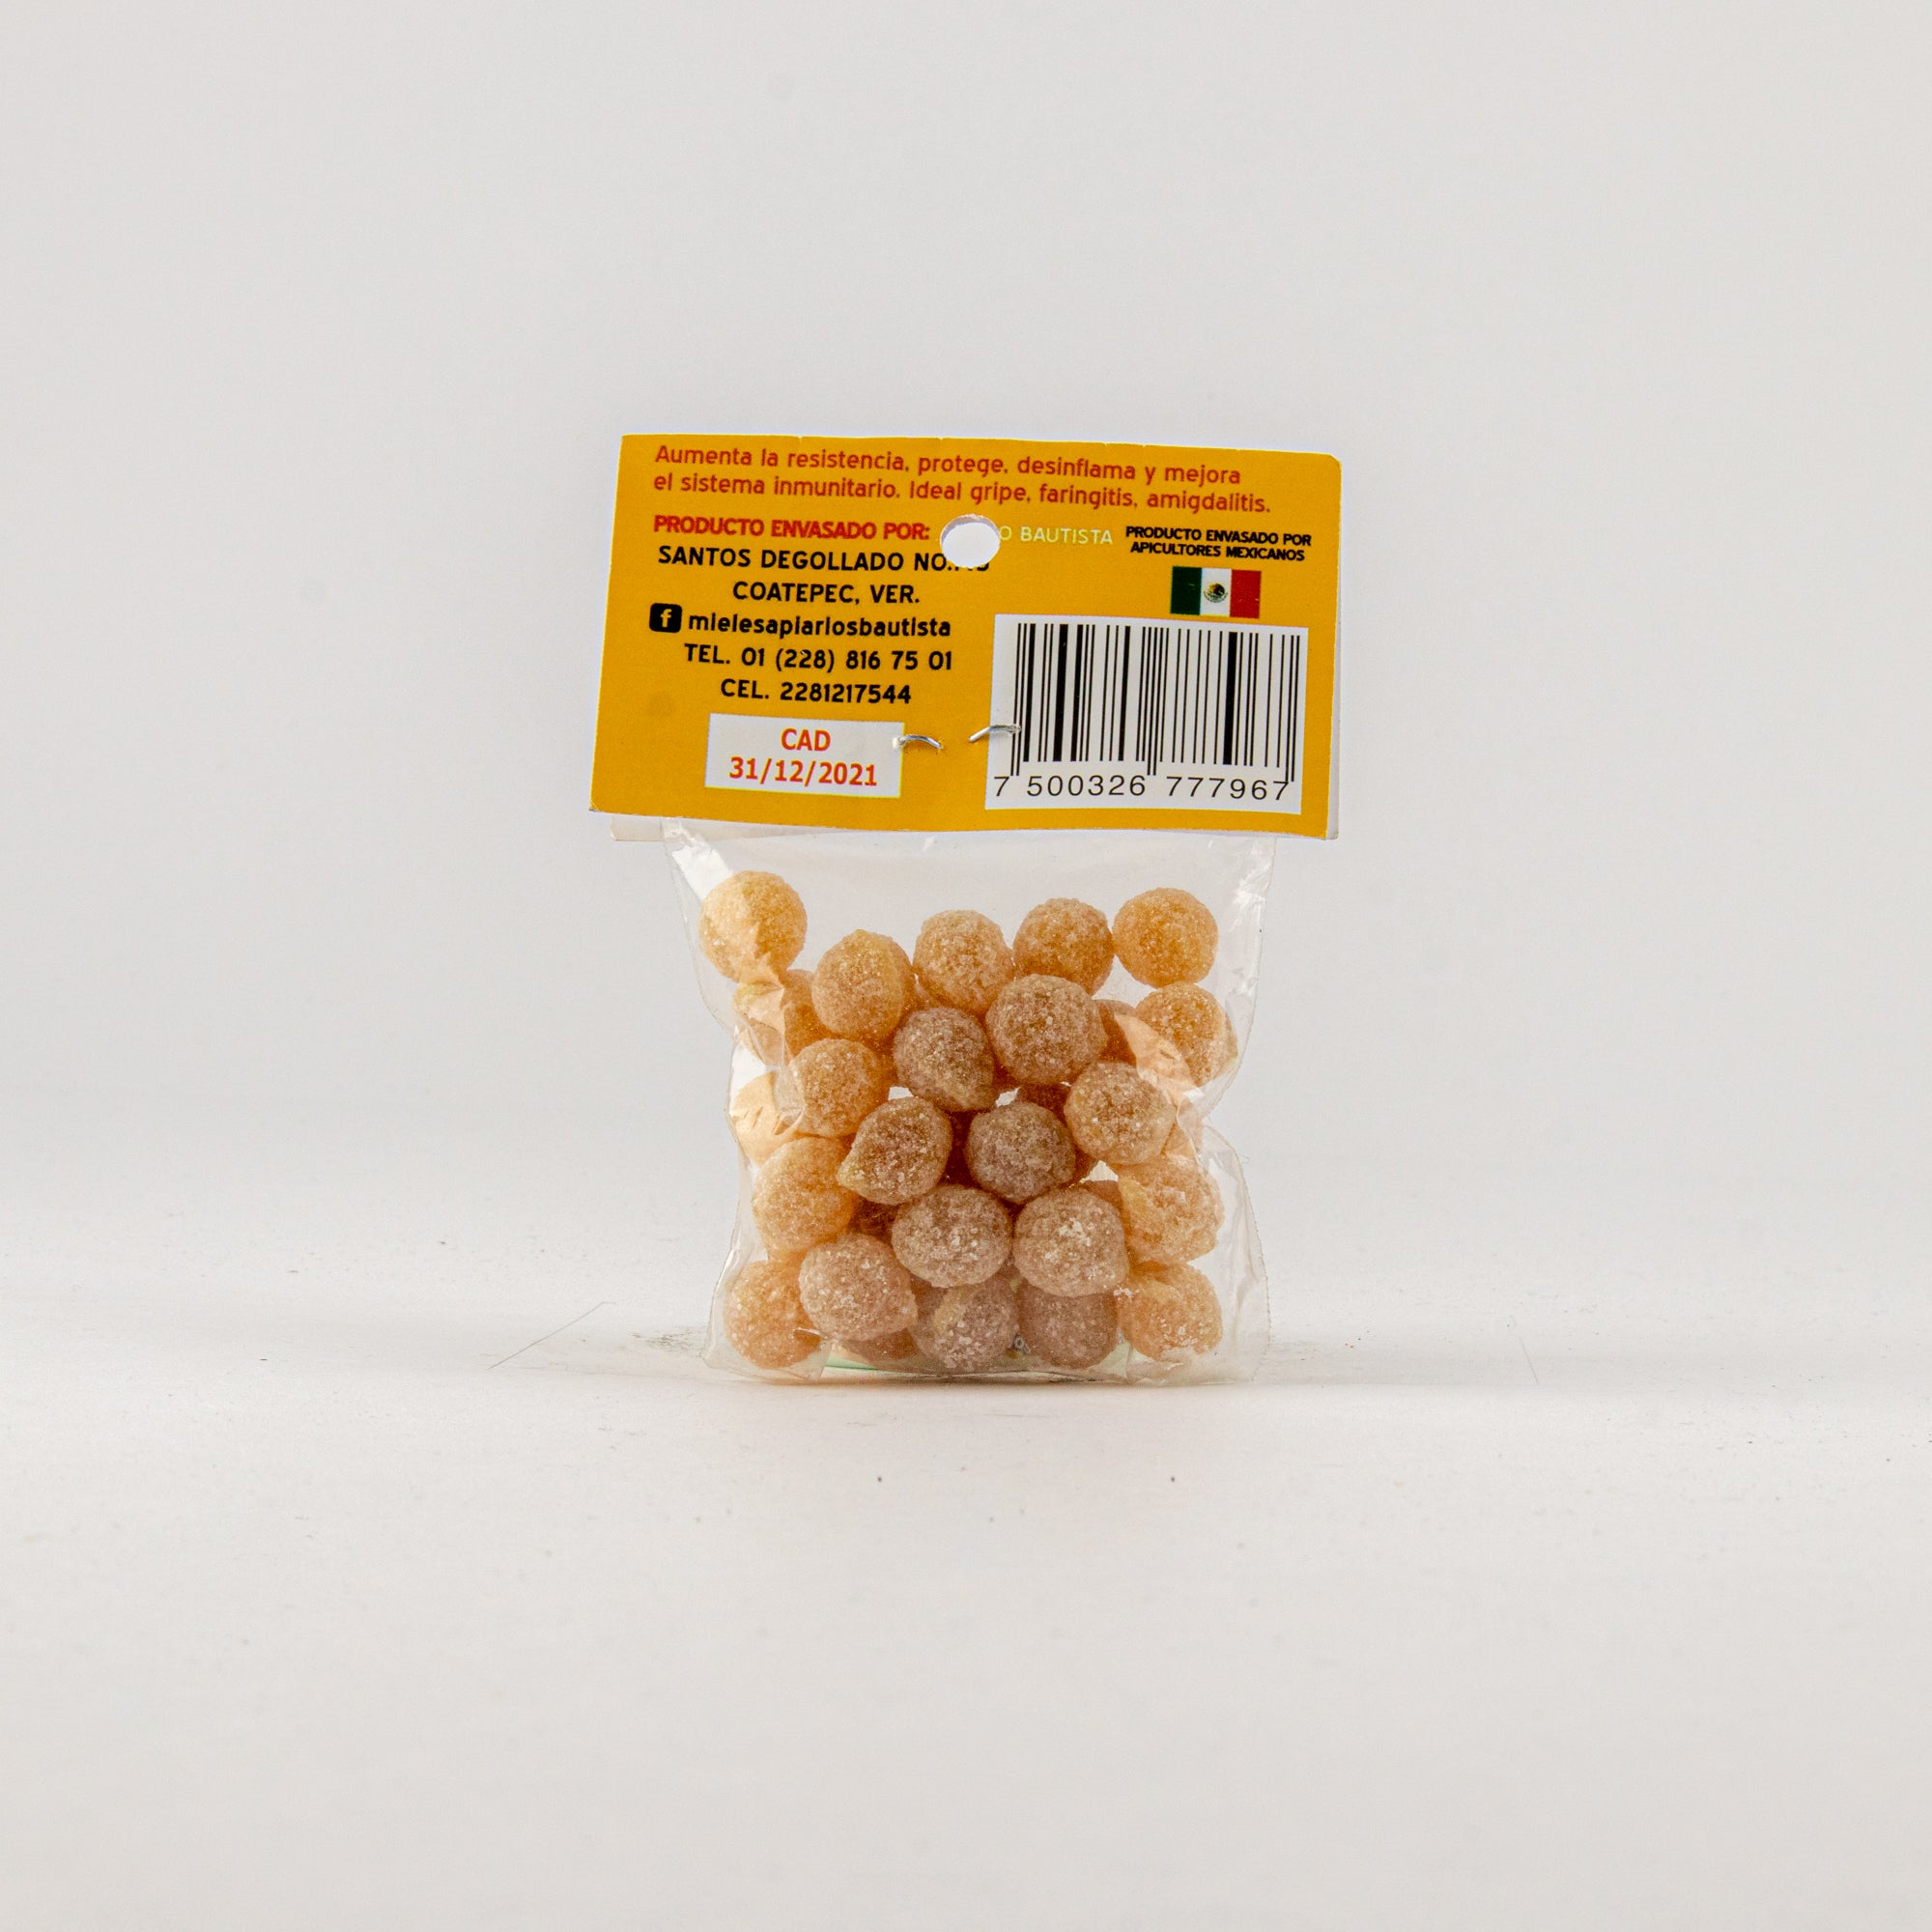 Caramelos de Miel 30grs